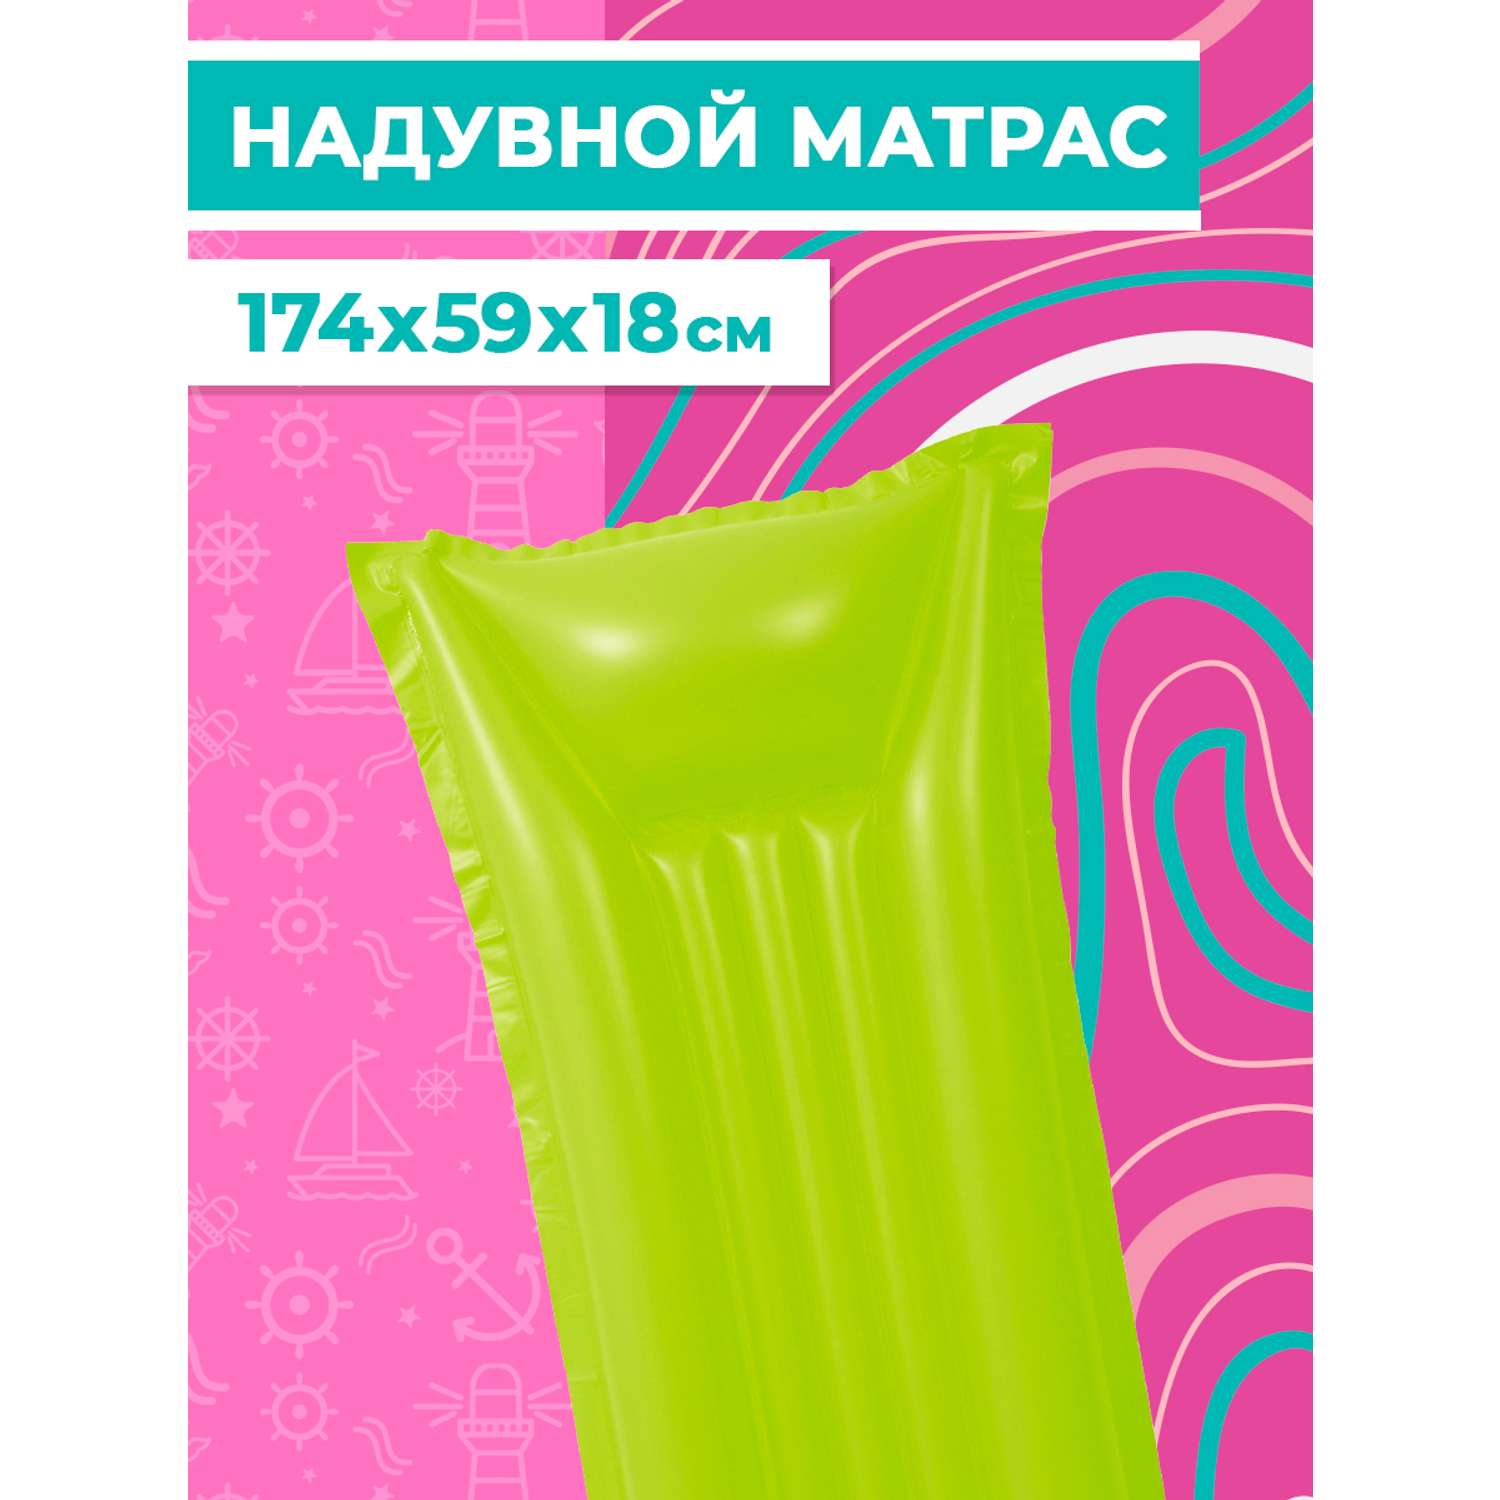 Матрас надувной Play market зеленый - фото 3